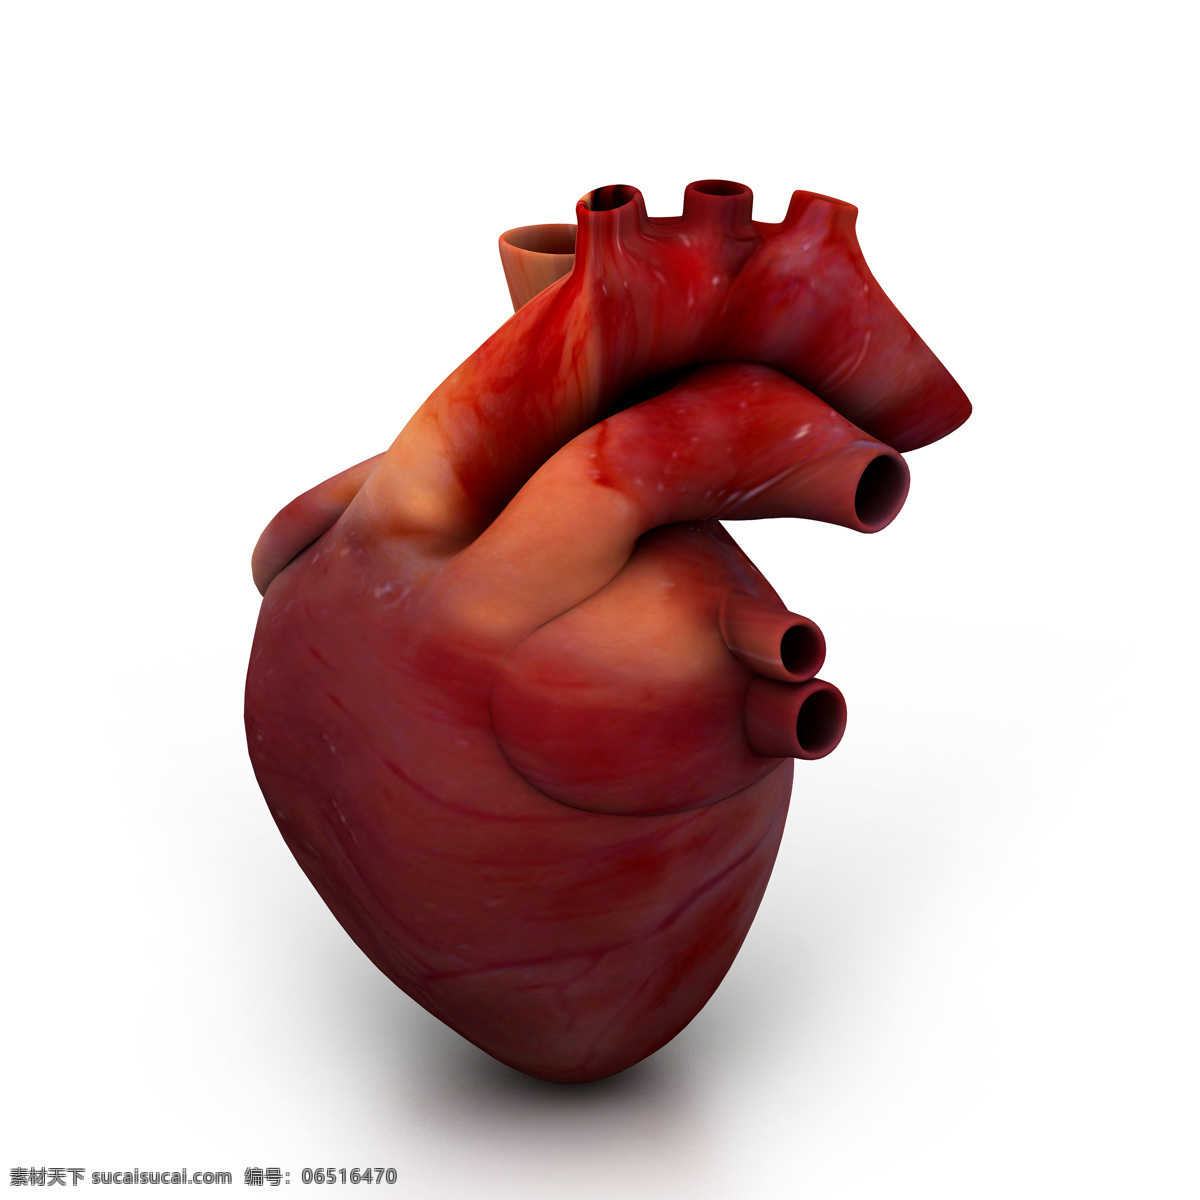 心脏 模型 心脏模型 内脏 人体器官 人体心脏 人体器官图 人物图片